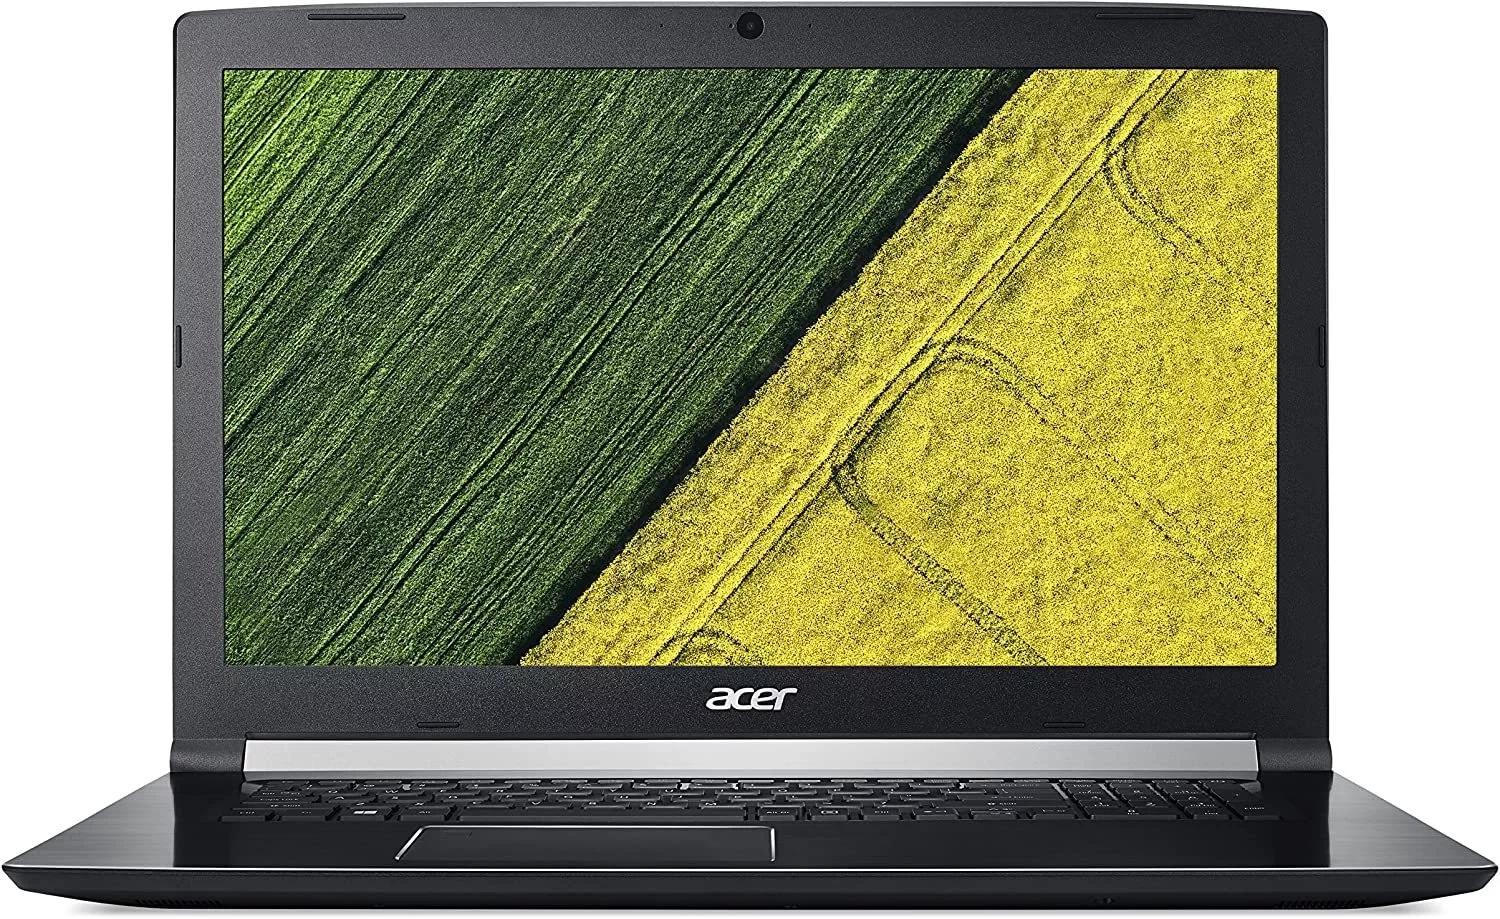 Acer Aspire 7 a717-72g